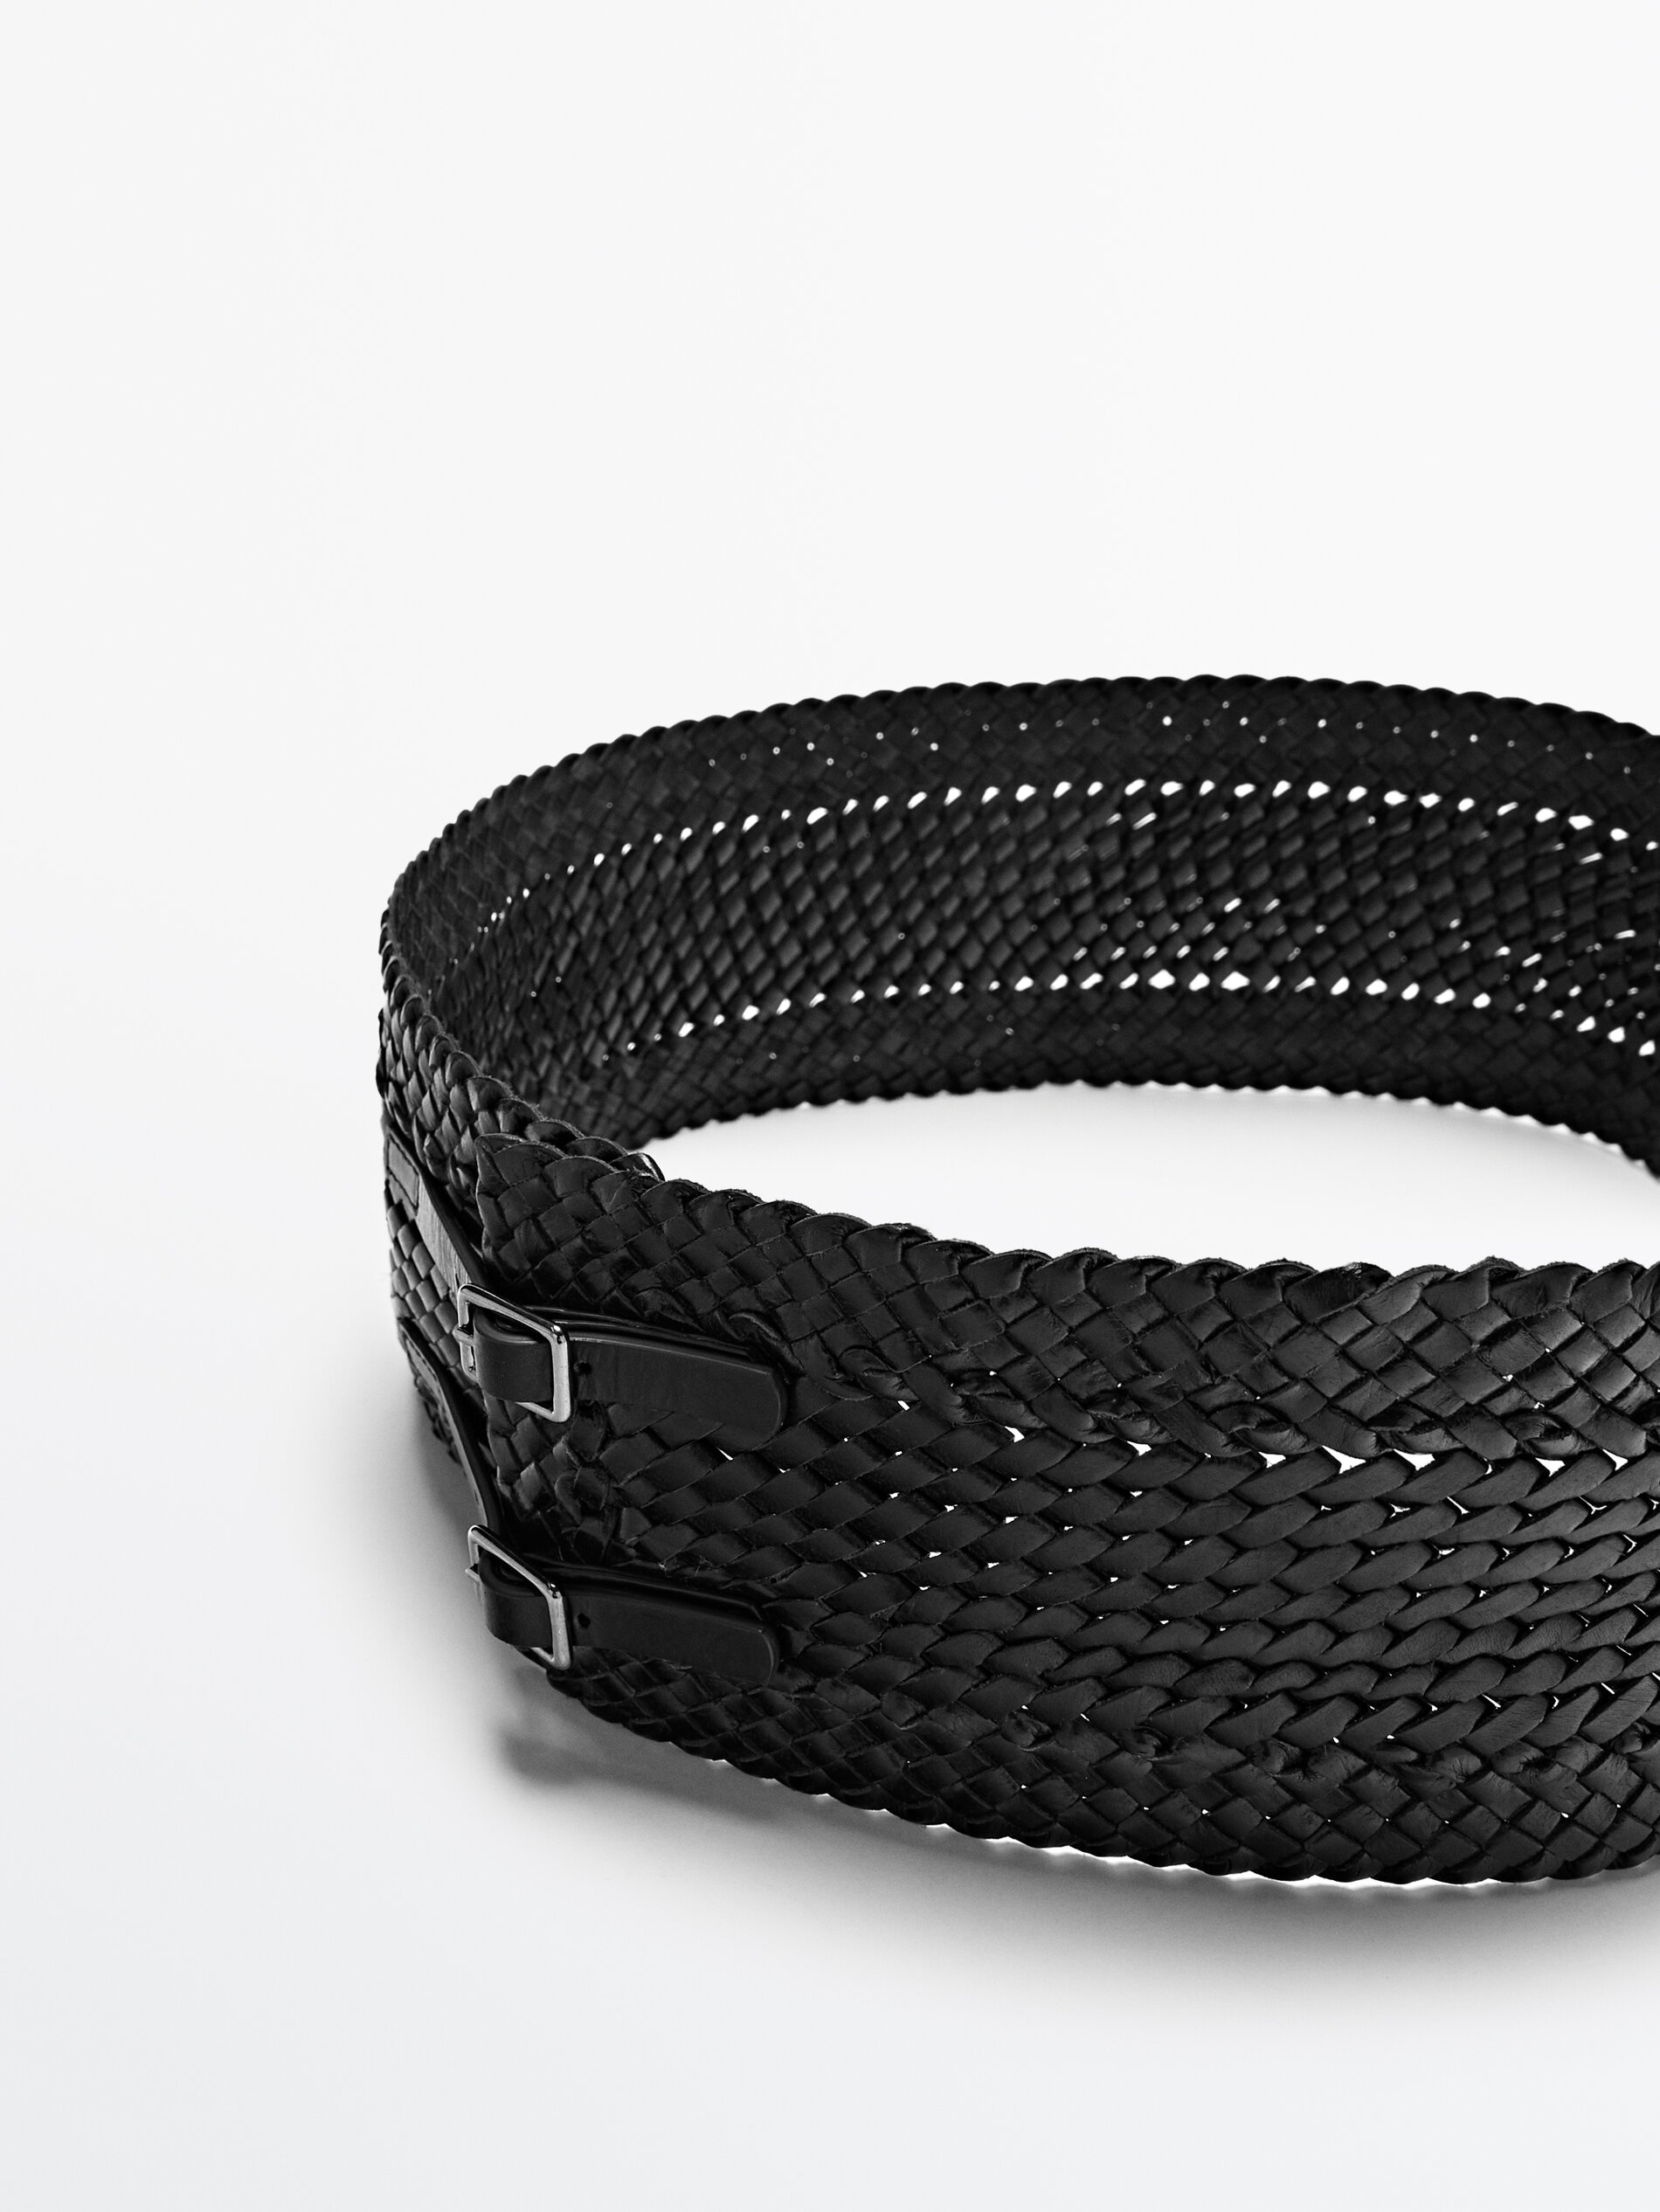 Massimo Dutti Cinturón fajín negro piel